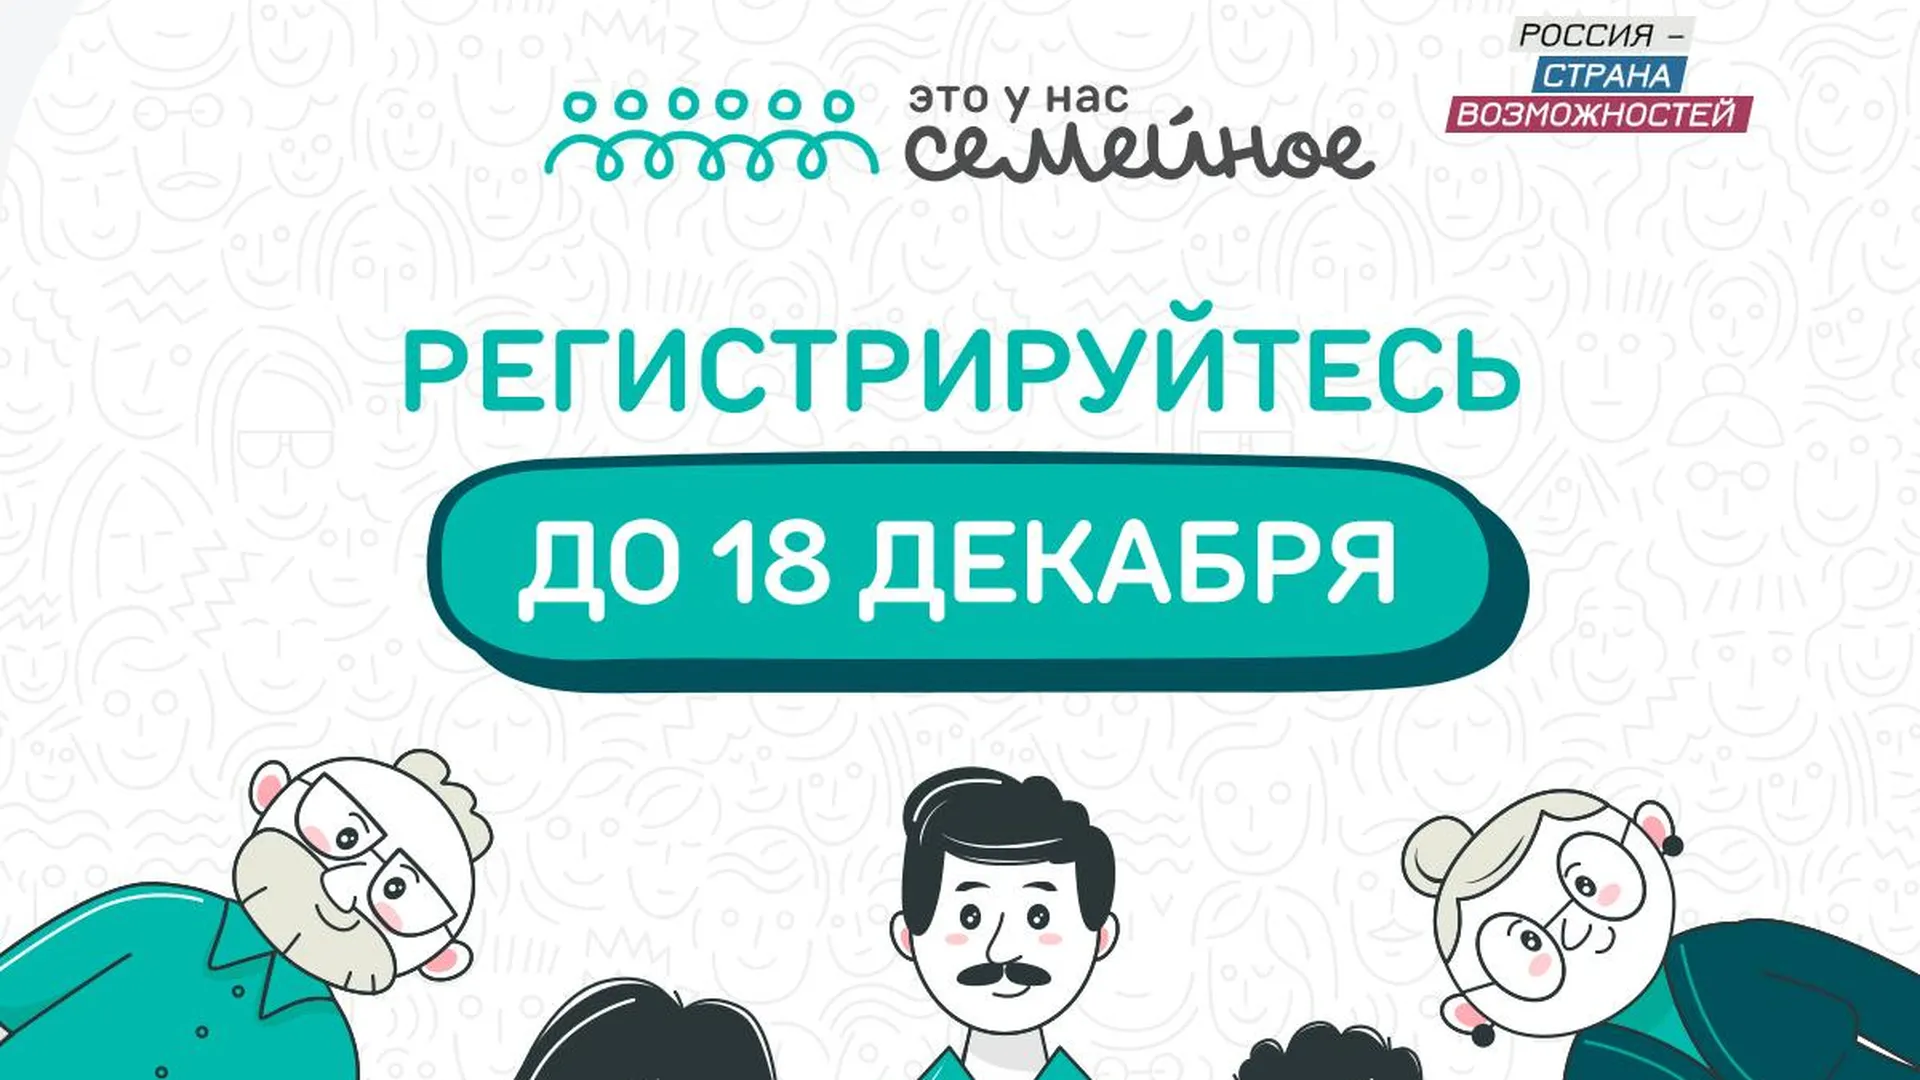 Заявочная кампания конкурса «Это у нас семейное» в РФ завершается 18 декабря